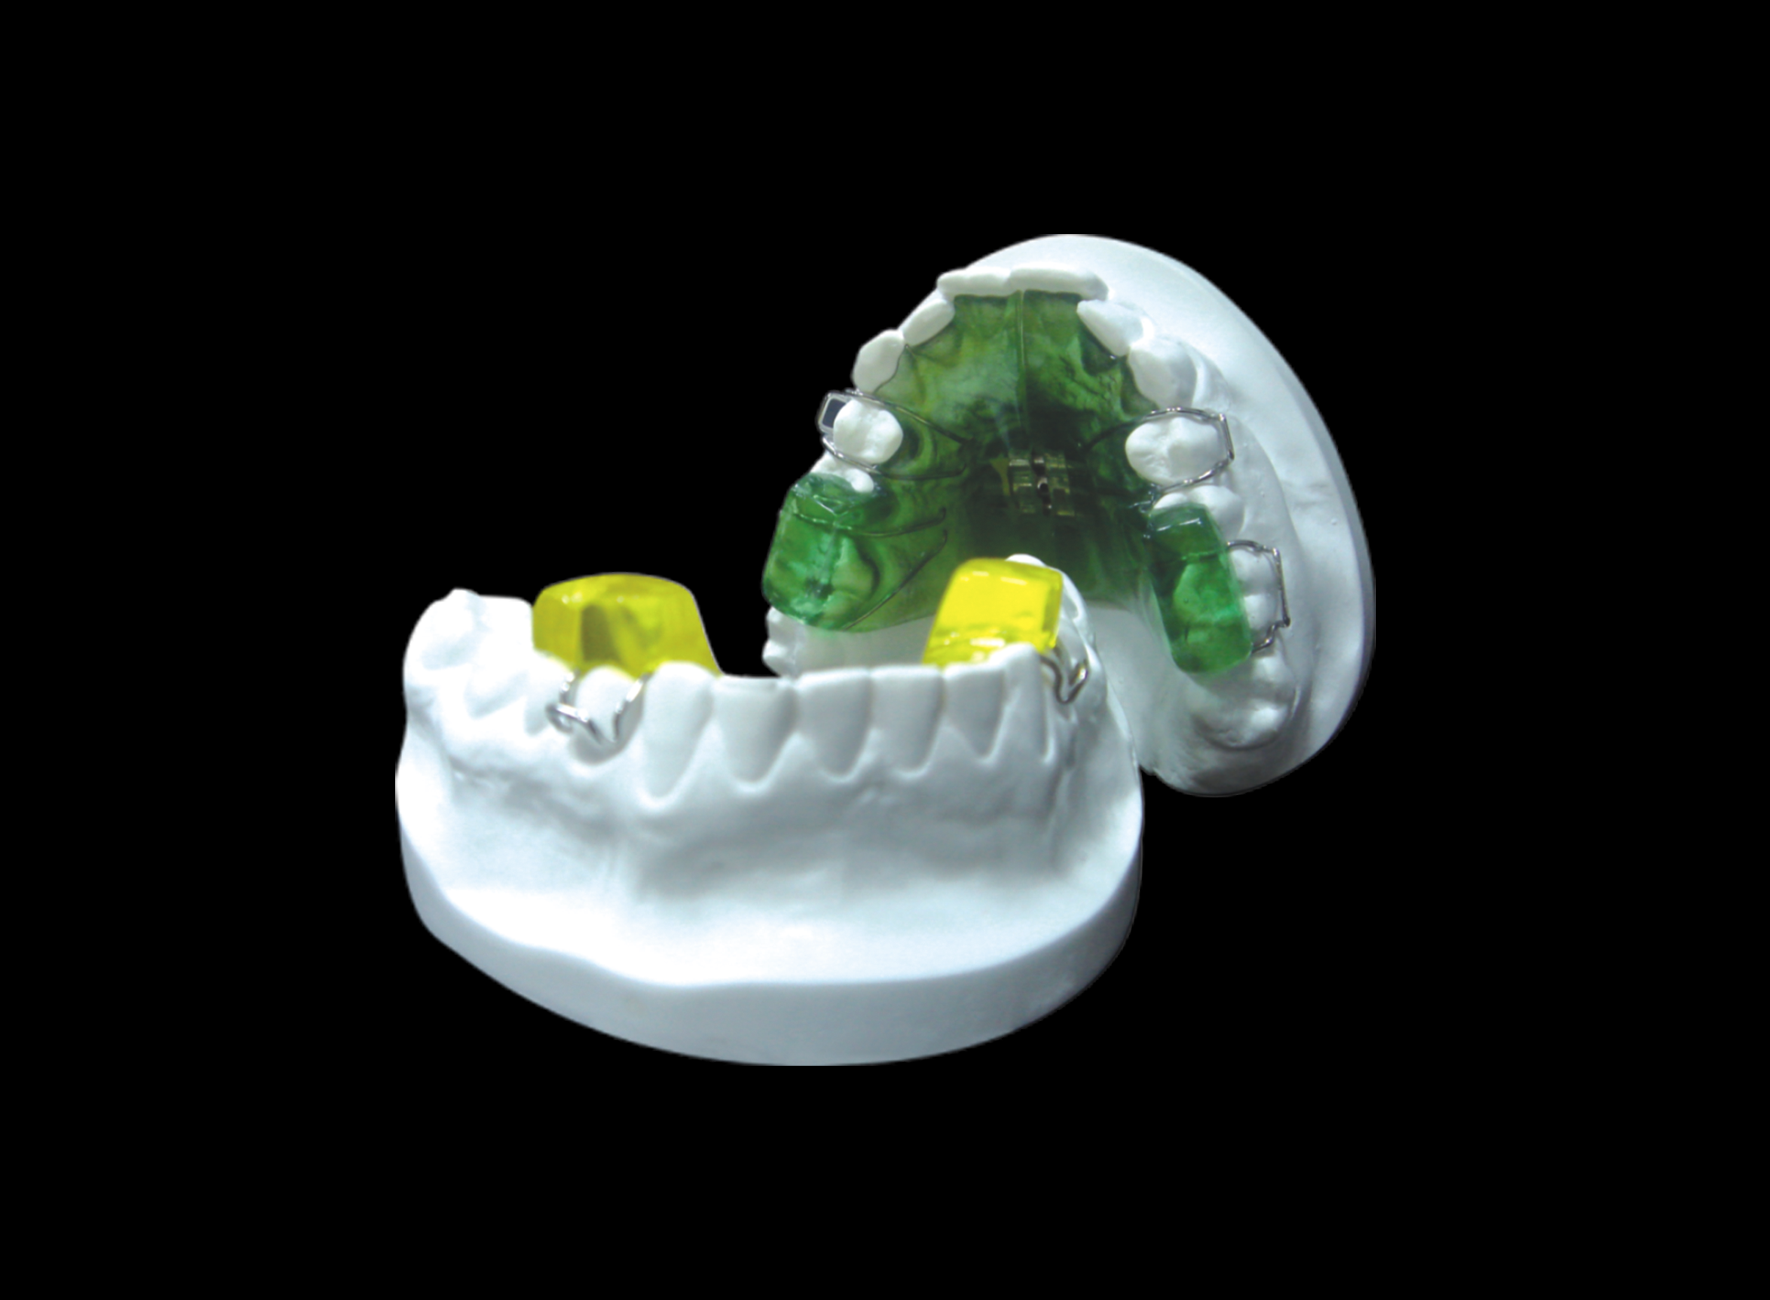 牙齿矫正时保持器使用应注意什么——广州德伦口腔